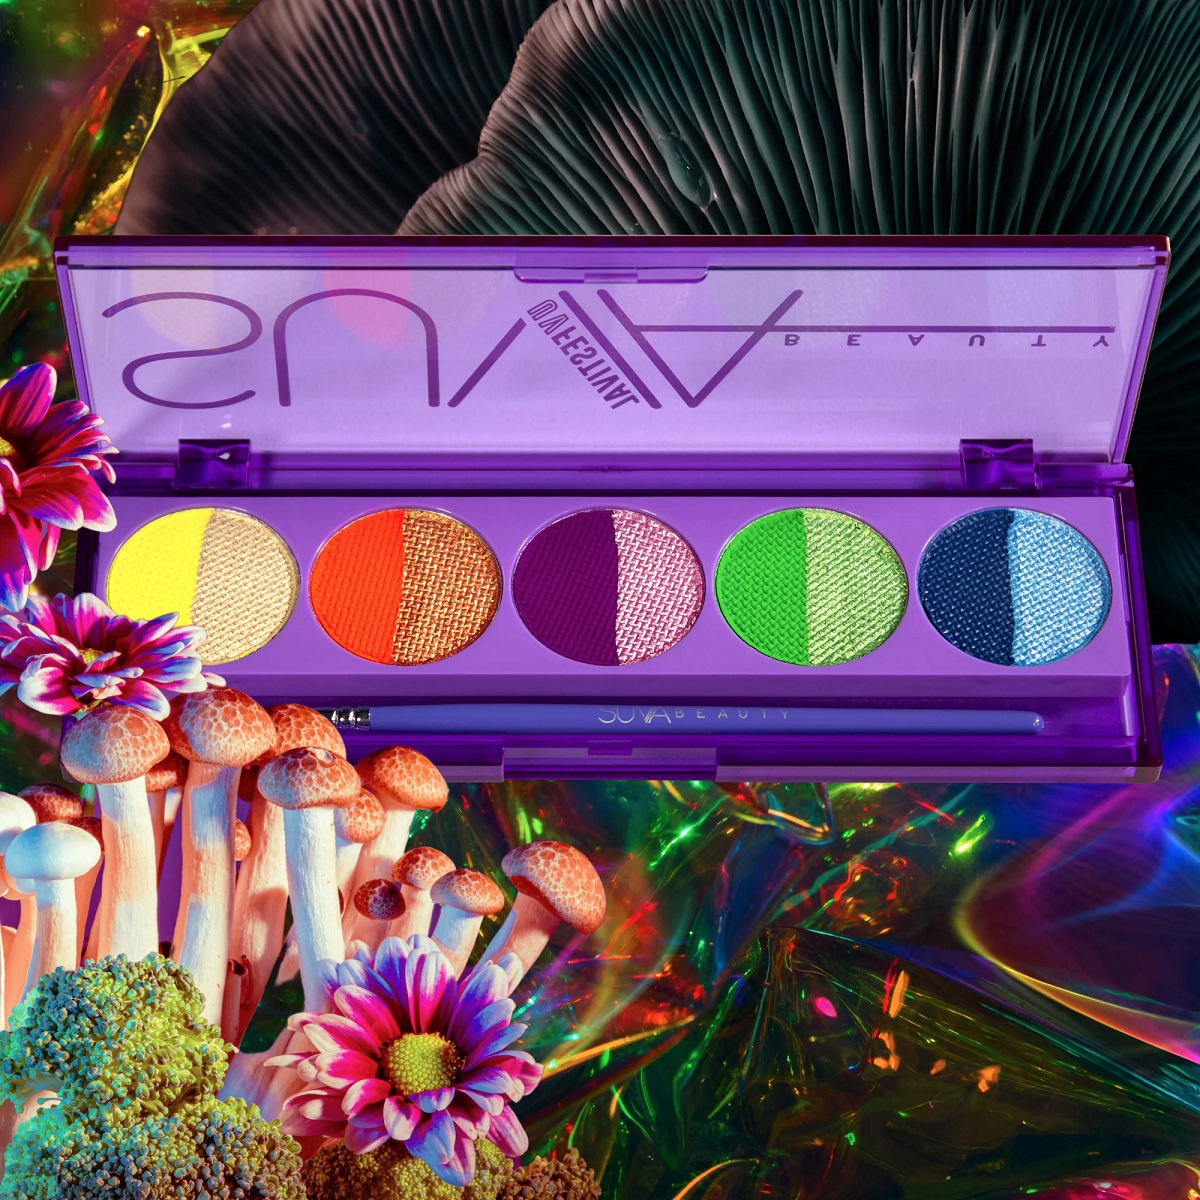 Suva Beauty UV Festival Palette